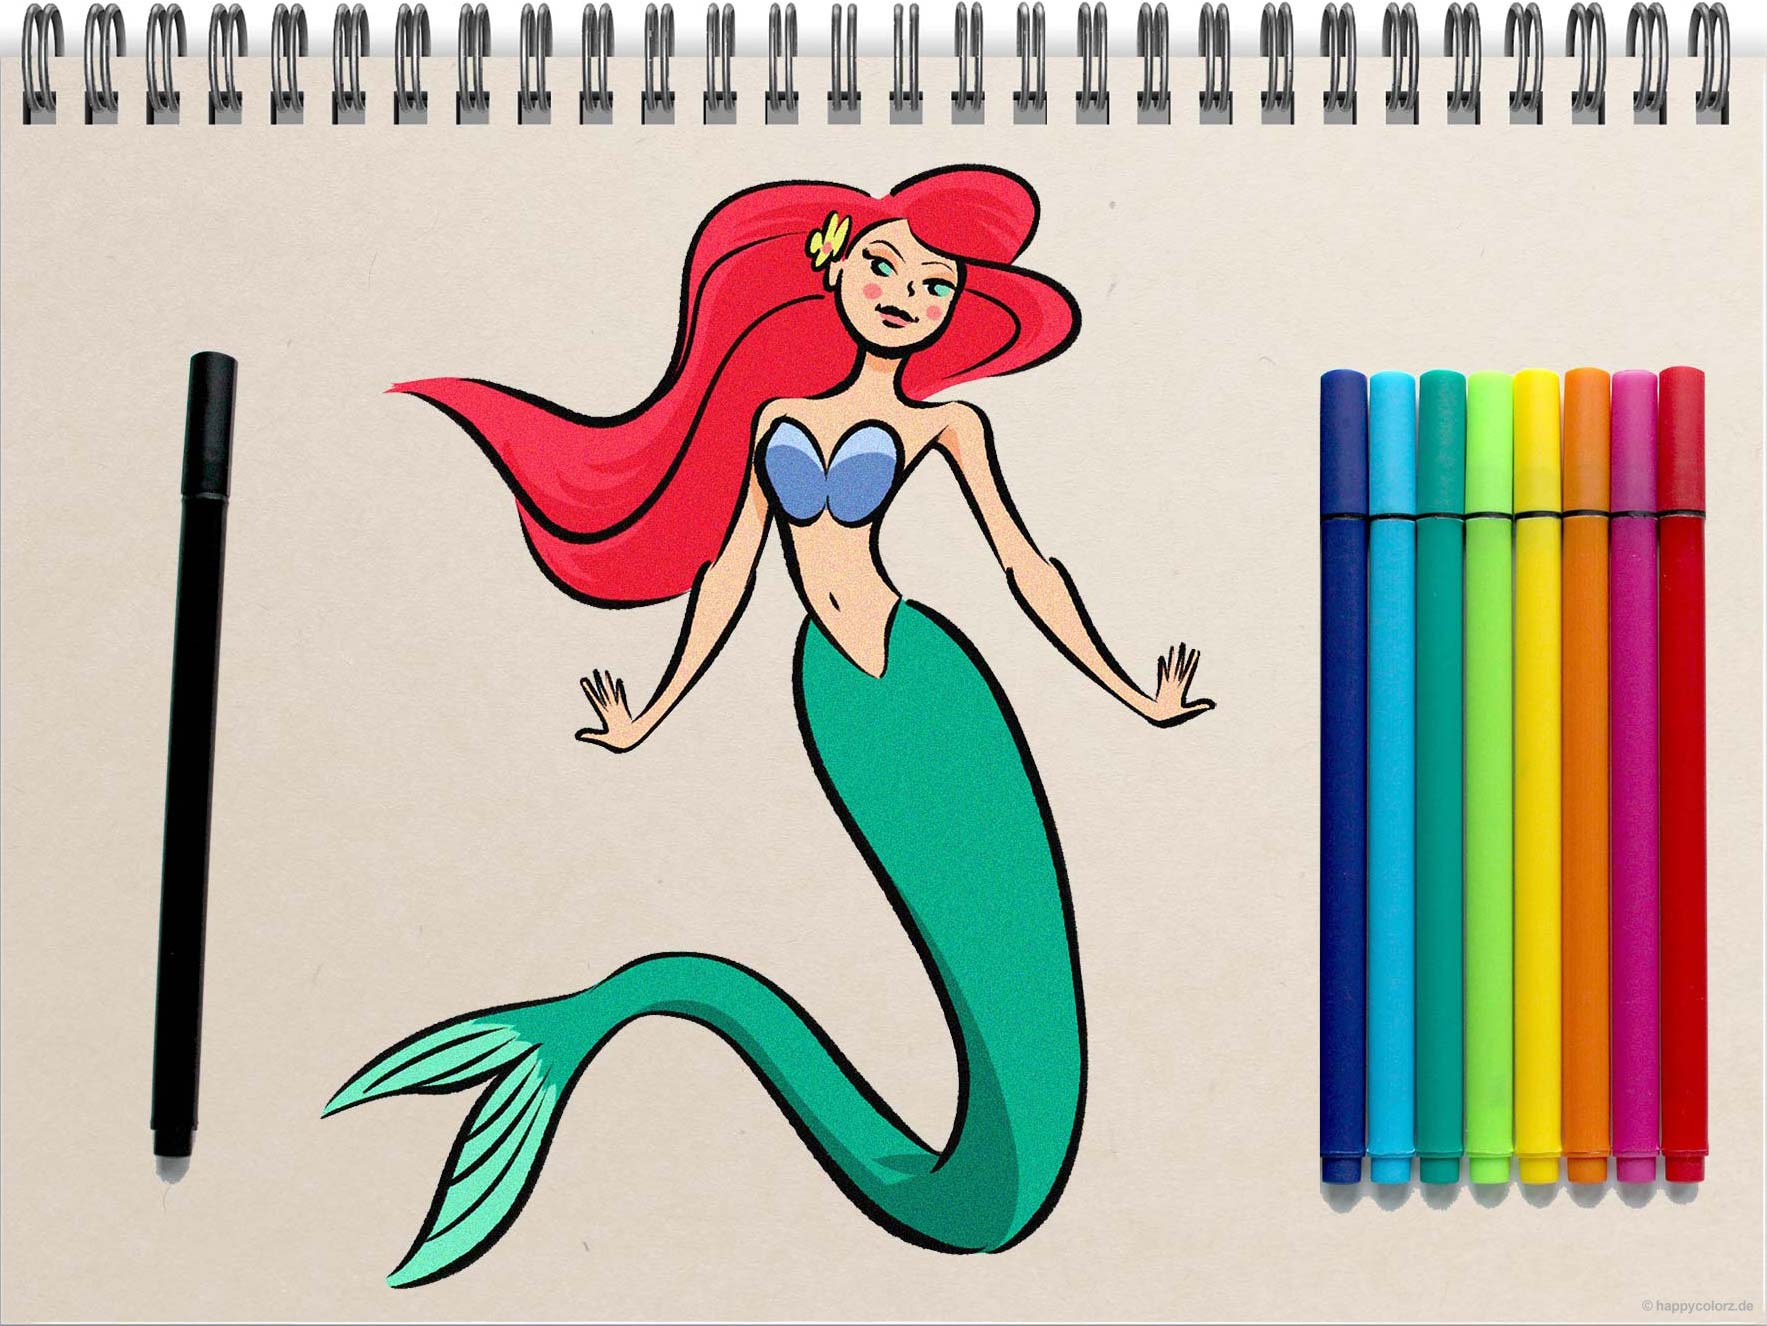 Meerjungfrau zeichnen - Schritt-für-Schritt Anleitung mit Vorlagen